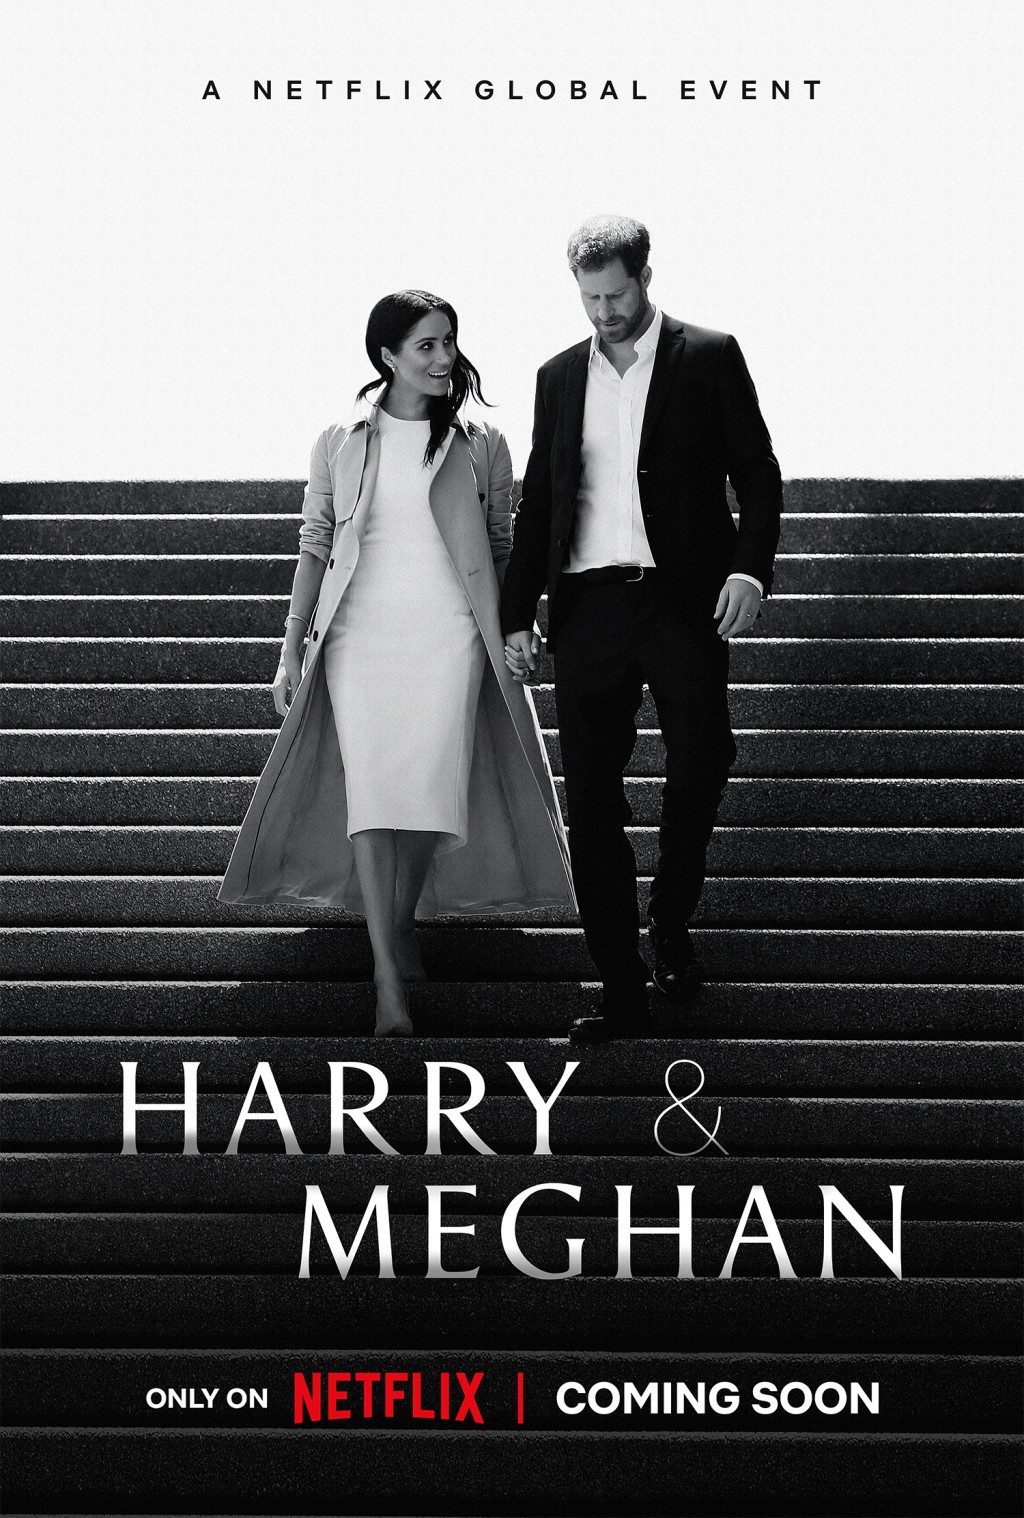 《哈里與梅根》紀錄片將在Netflix緊接《皇冠》第5季後在12月播出，以延續熱度。AP